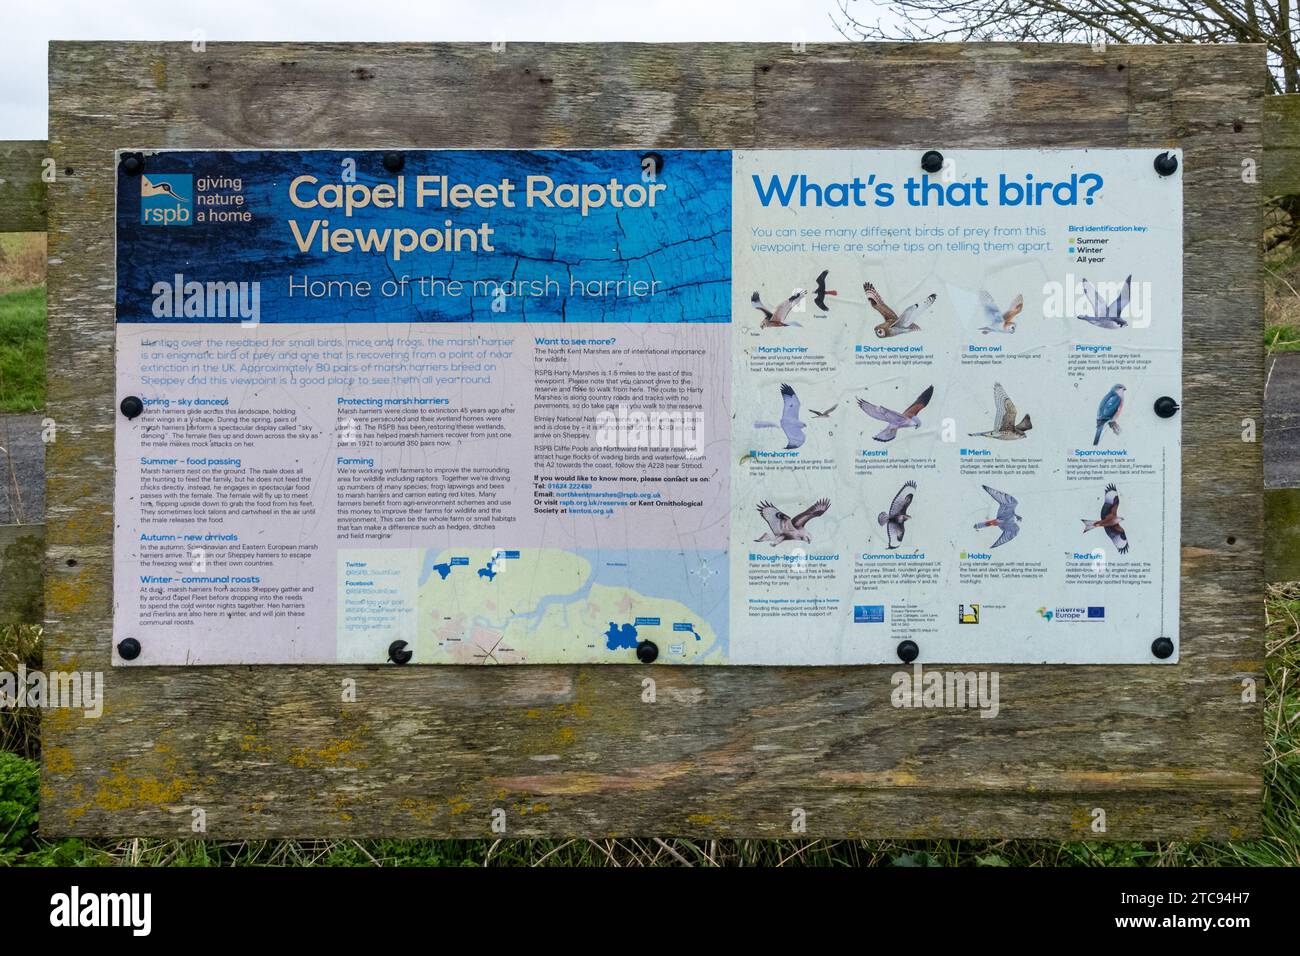 RSPB Capel Fleet Raptor Viewpoint, île de Sheppey, Kent, Angleterre, Royaume-Uni. Panneau d'information montrant les caractéristiques d'identification des rapaces (oiseaux de proie) Banque D'Images